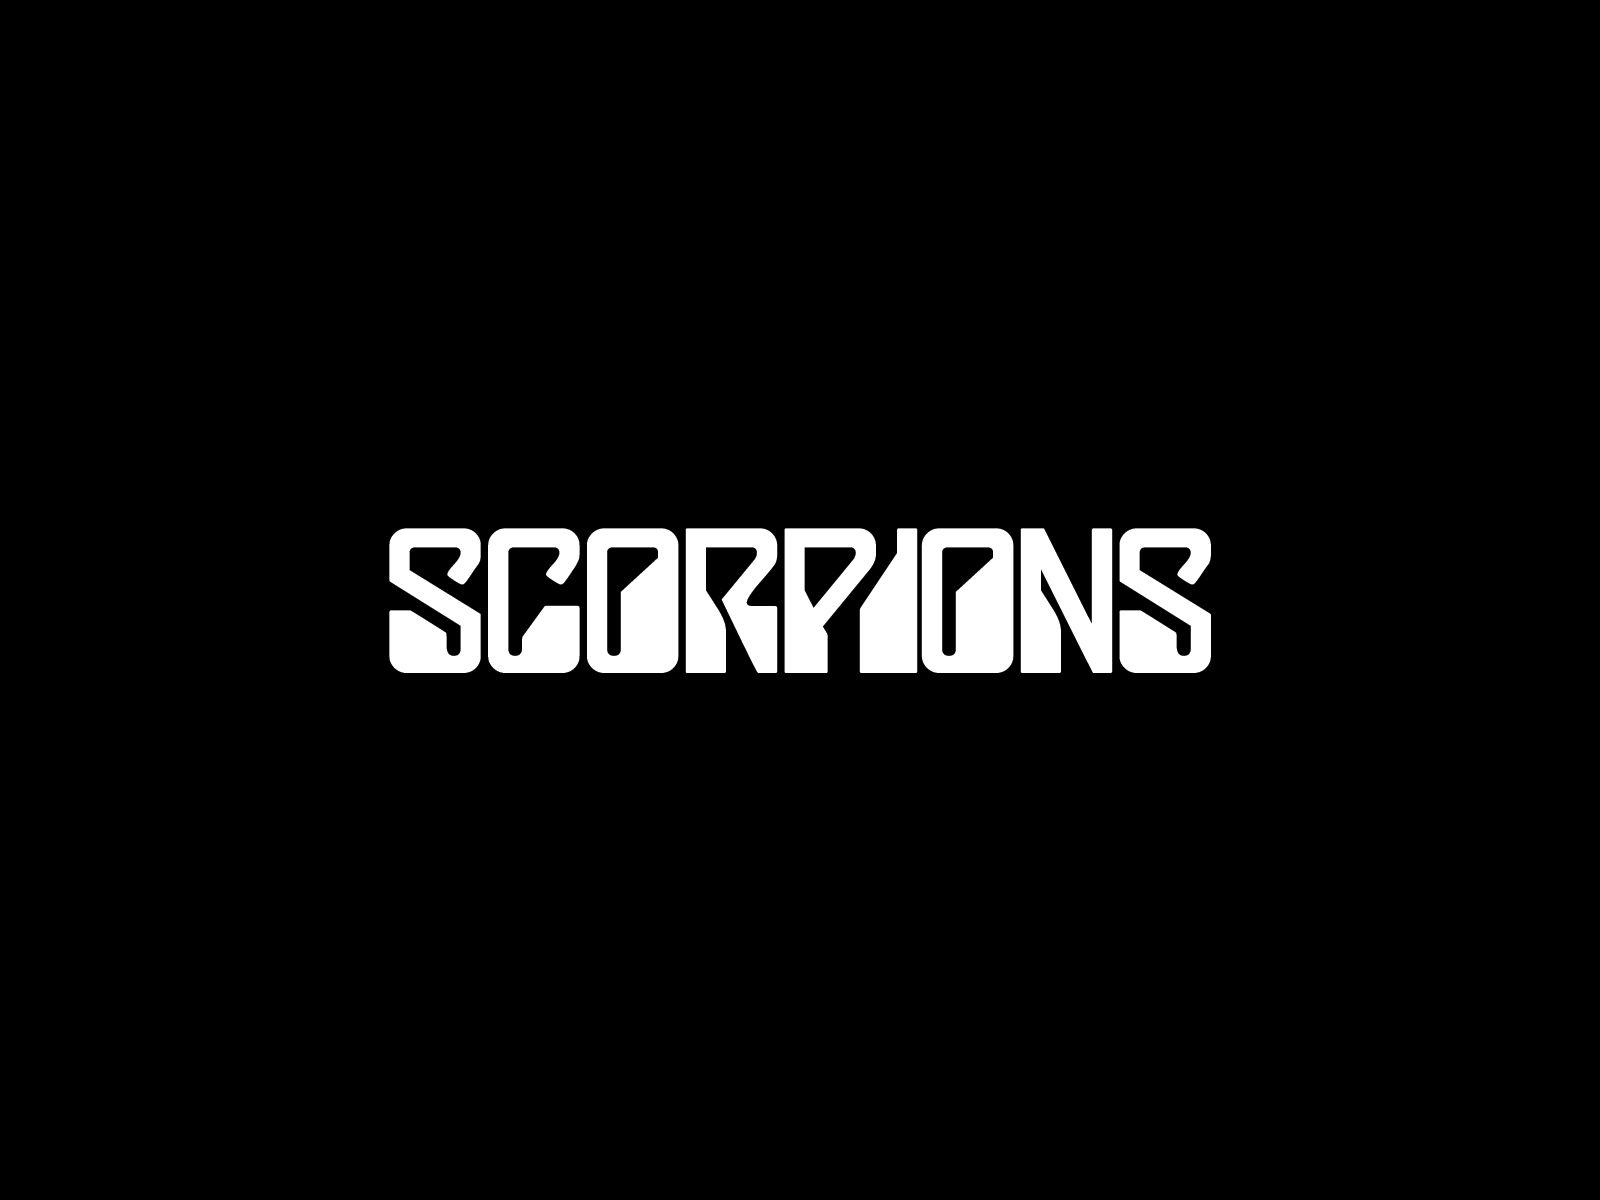 Scorpions logo and wallpaper. Band logos band logos, metal bands logos, punk bands logos